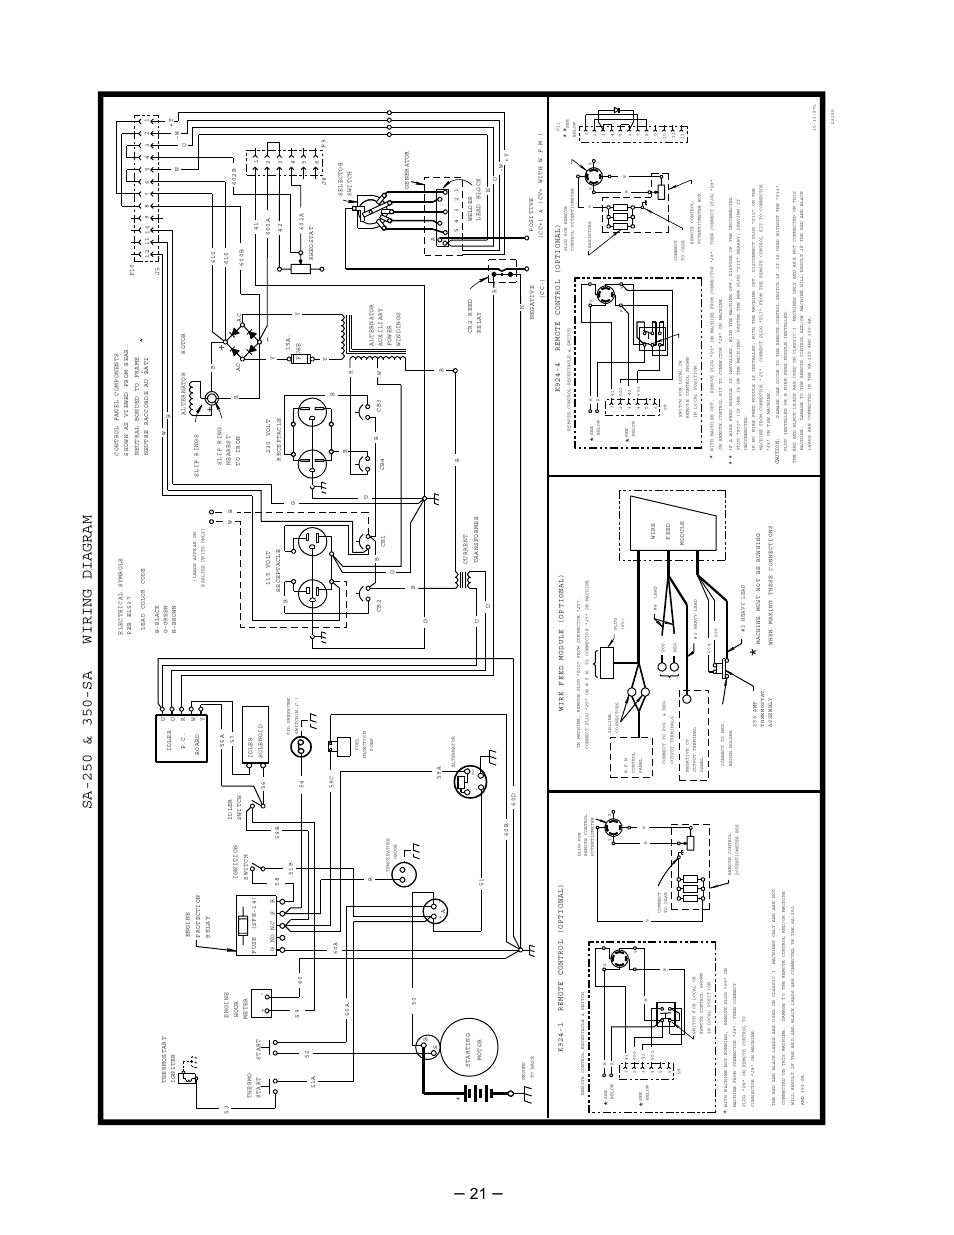 Diagram  Dc Welder Wiring Diagram Schematic Full Version